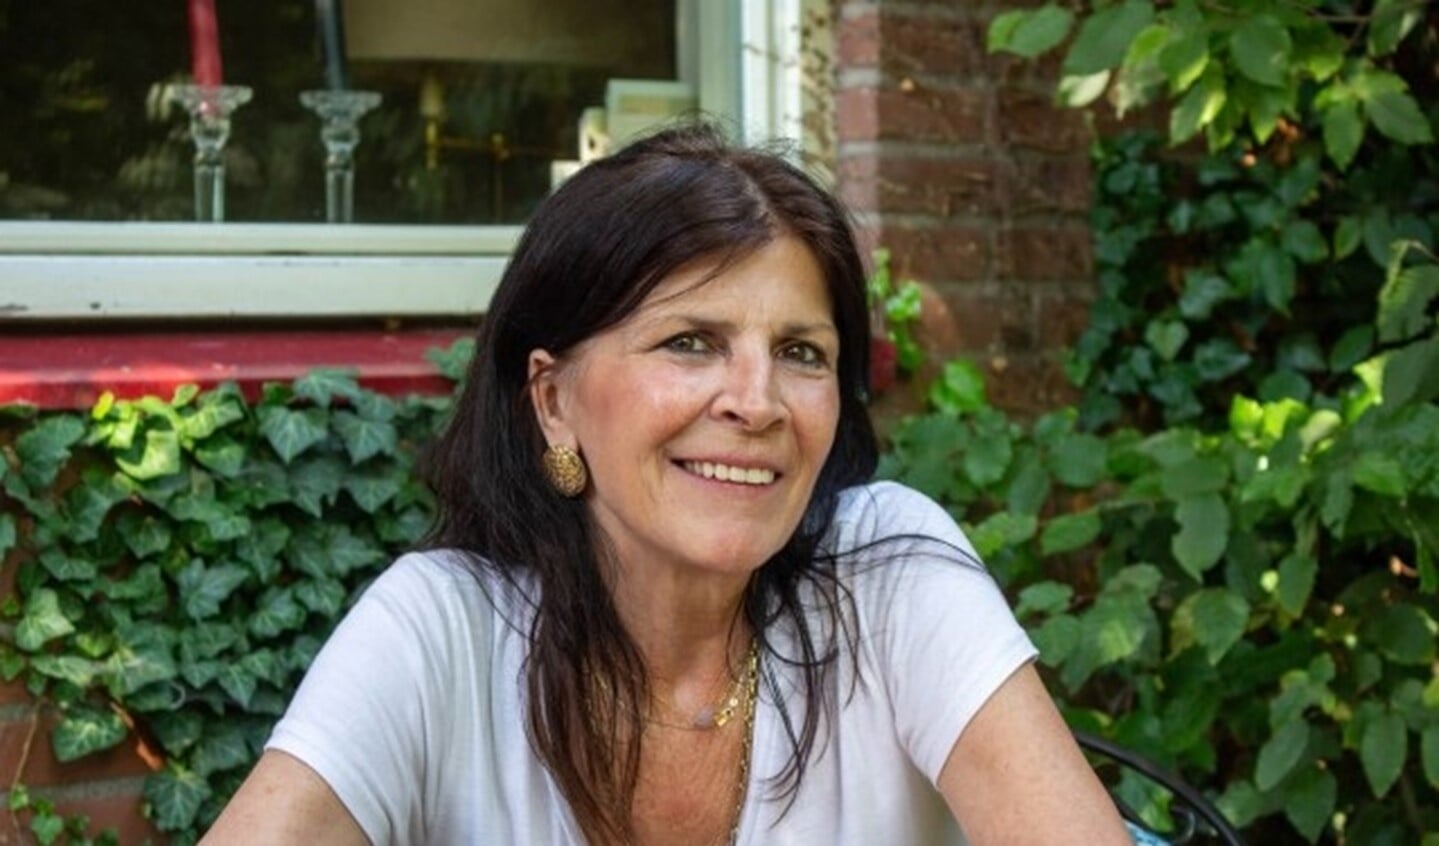 Filosofe Karin Melis is de gast in het AD Café van zondag 8 december.